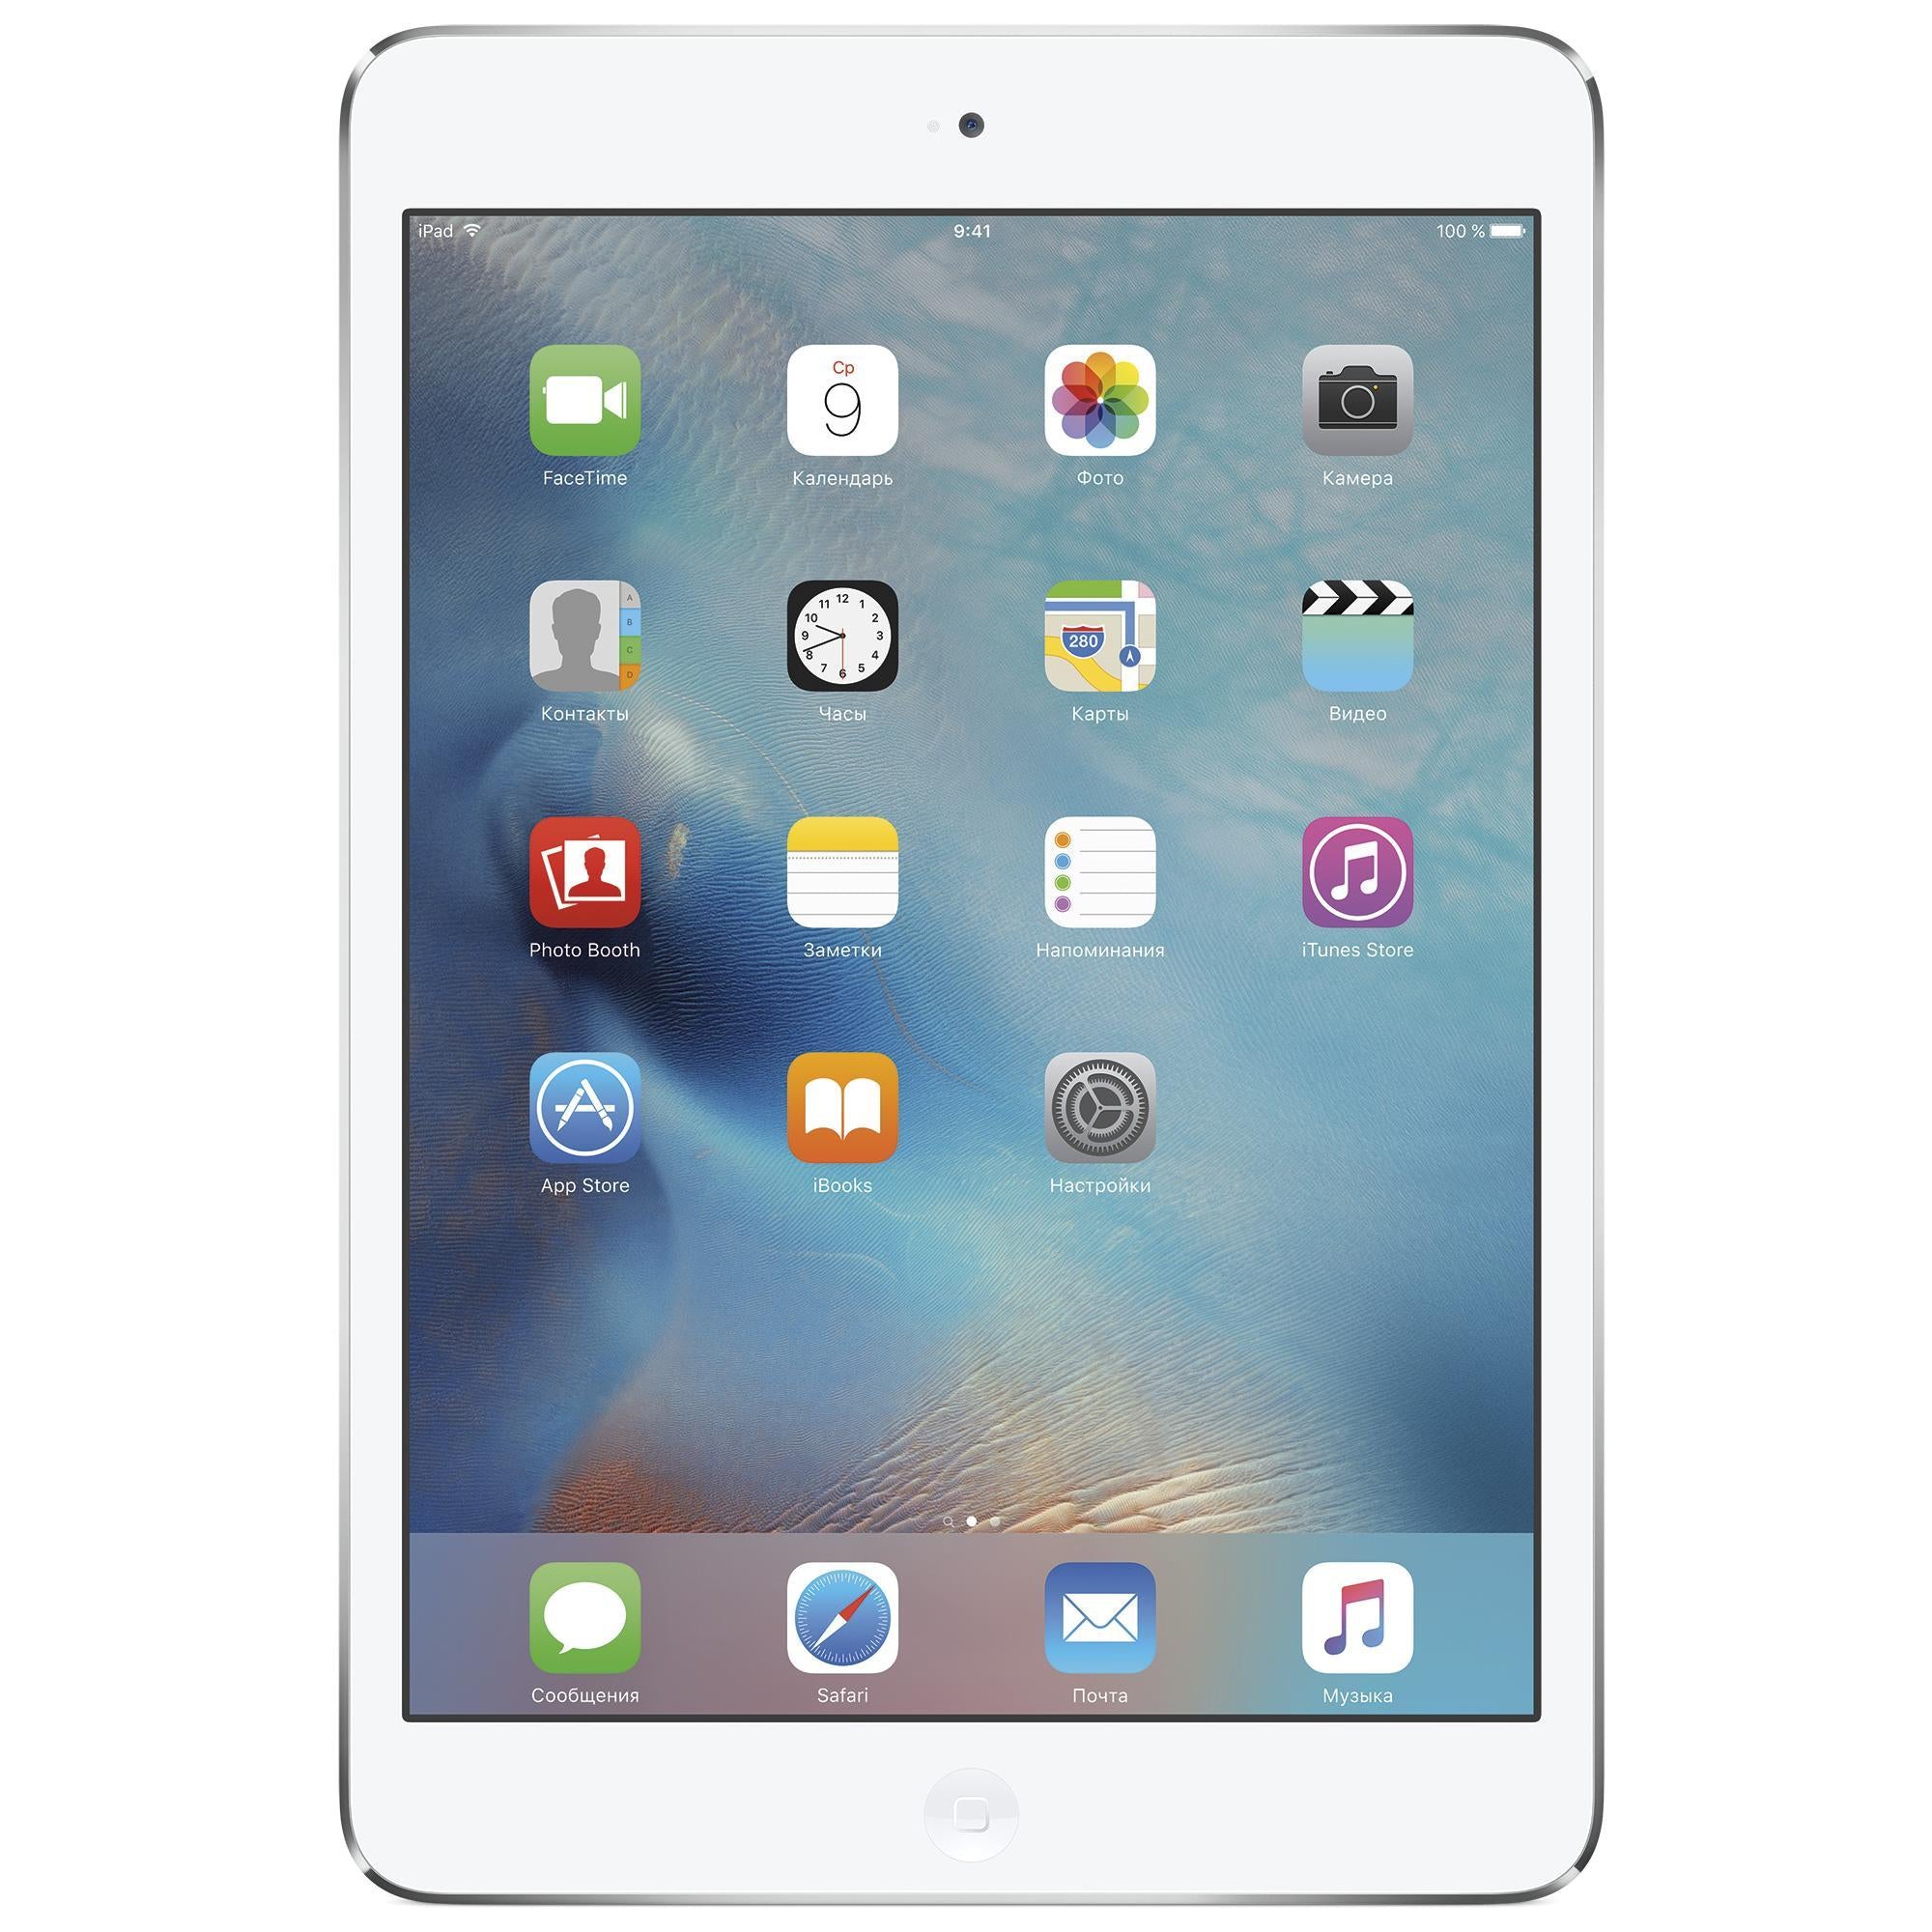 iPad mini 2 (2013) - WiFi + 4G - Reacondicionado